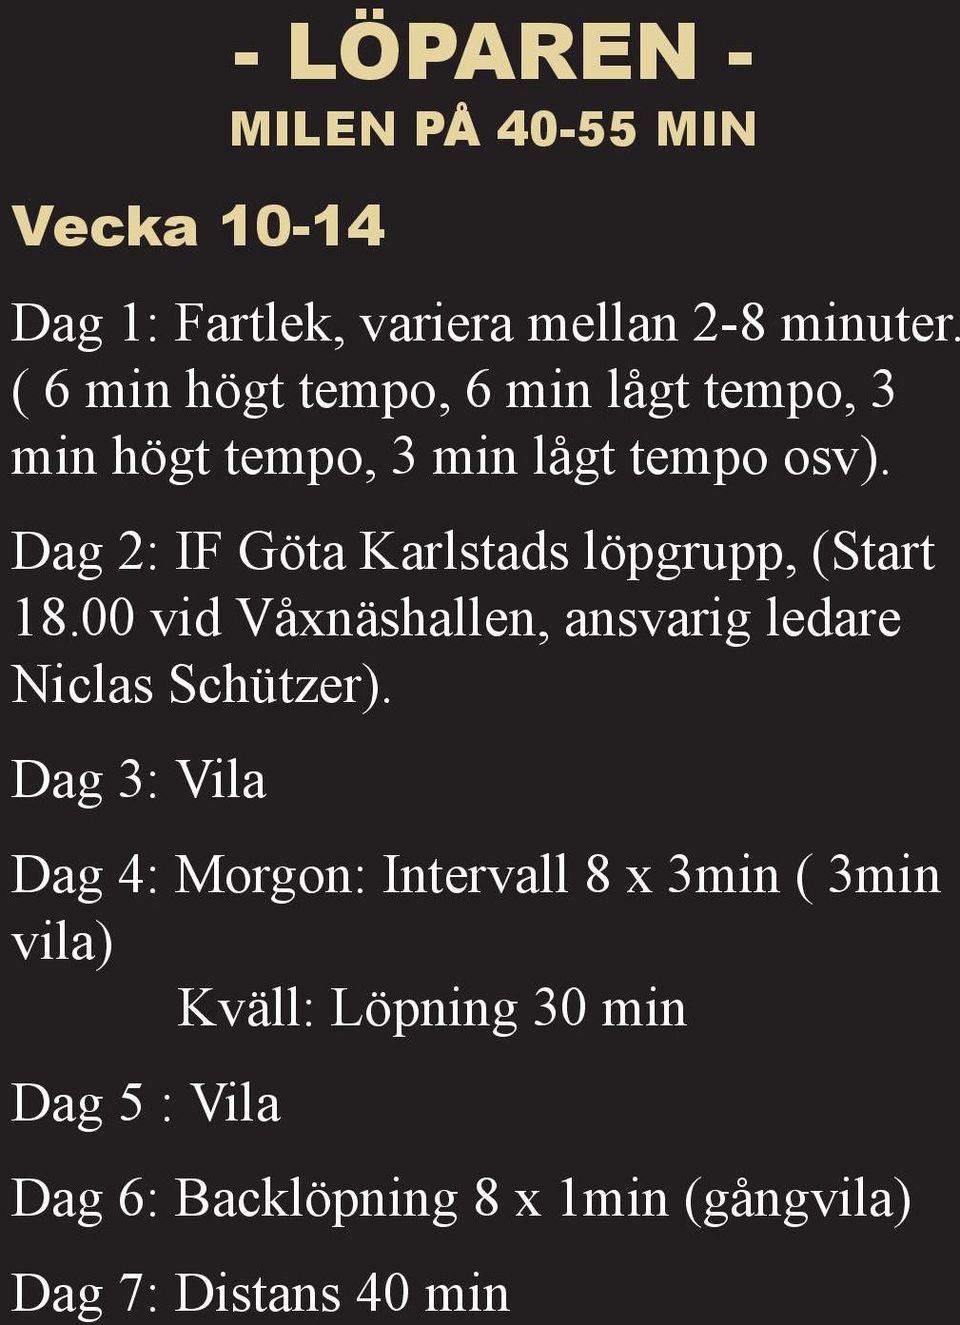 Dag 2: IF Göta Karlstads löpgrupp, (Start 18.00 vid Våxnäshallen, ansvarig ledare Niclas Schützer).